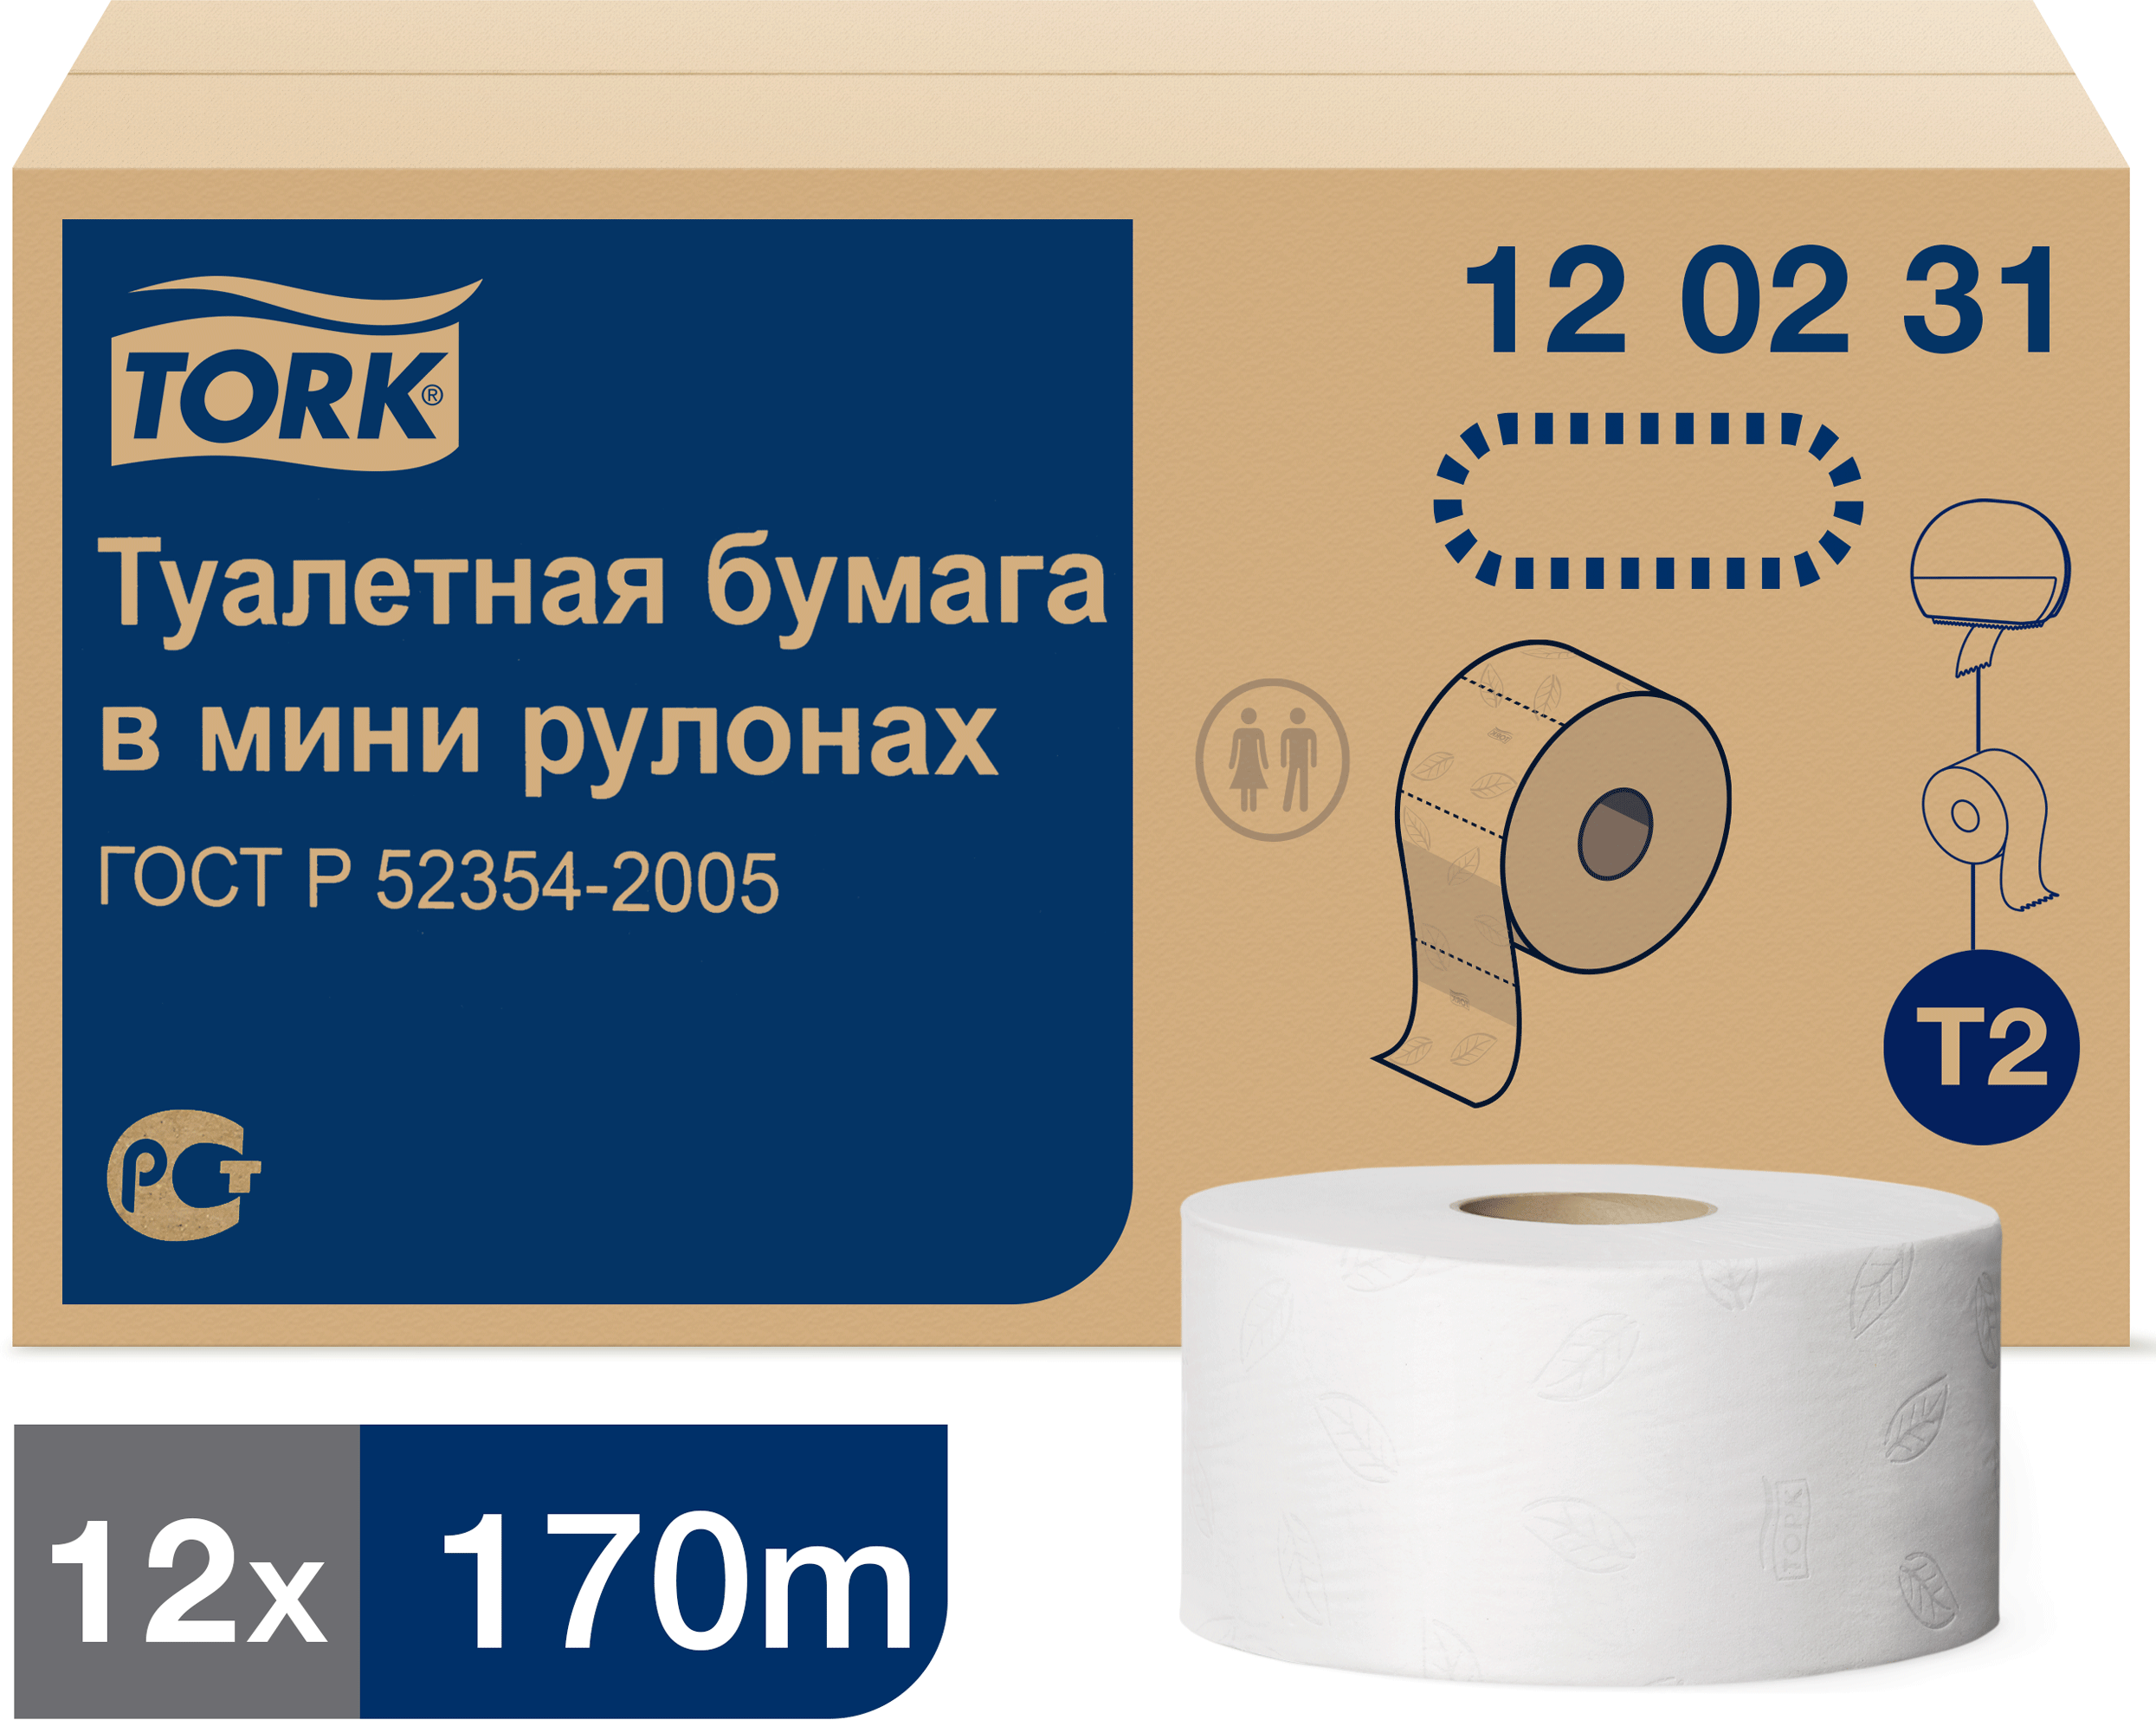 Туалетная бумага Tork T2 120231 двухслойная 1 упаковка - 12 рулонов по 170 метров